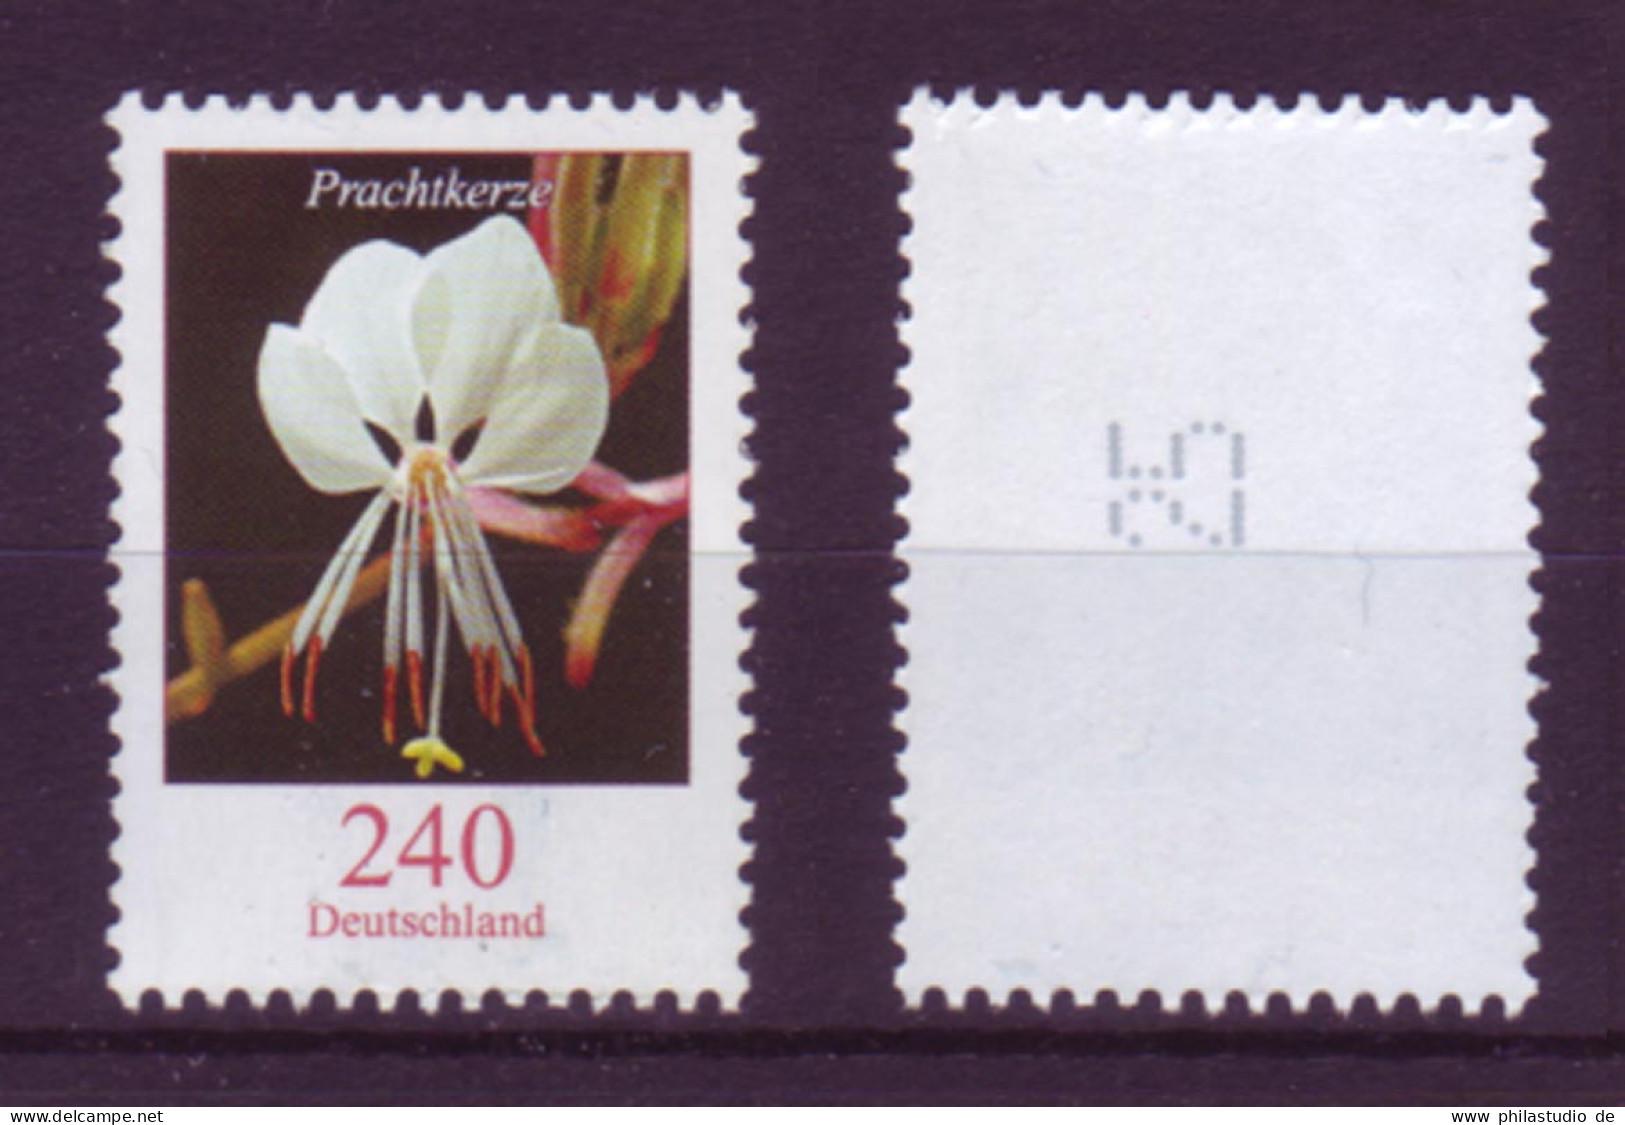 Bund 2969 RM Mit Ungerade Nummer Blumen Prachtkerze 240 Cent Postfrisch - Rollenmarken